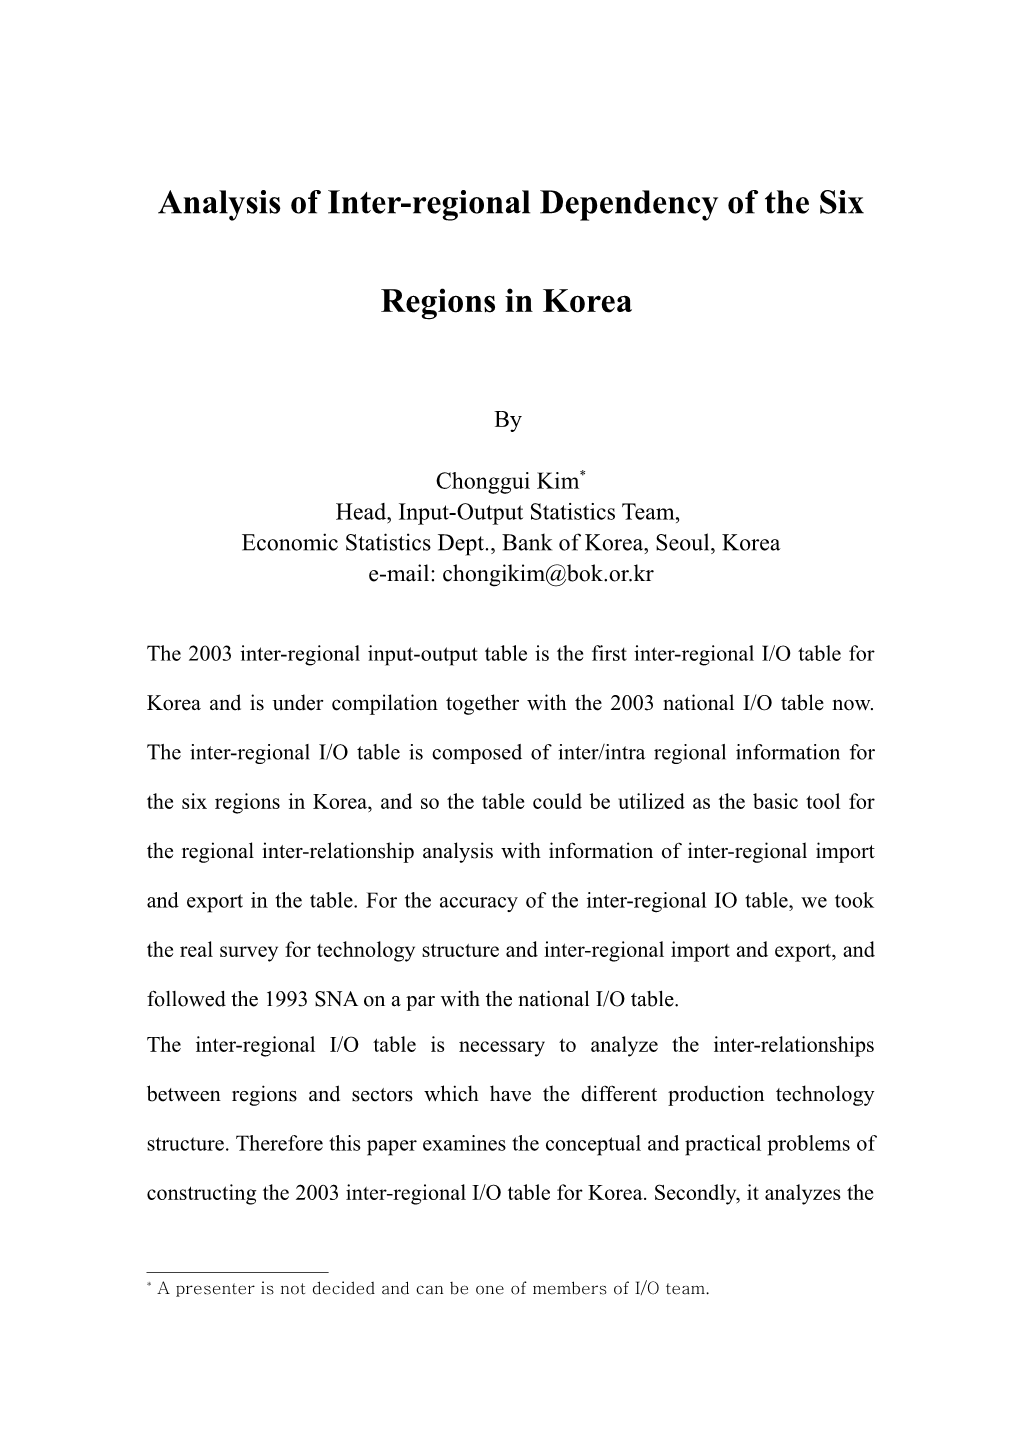 Ananlysis of Inter-Regional Dependency of the Six Regions in Korea